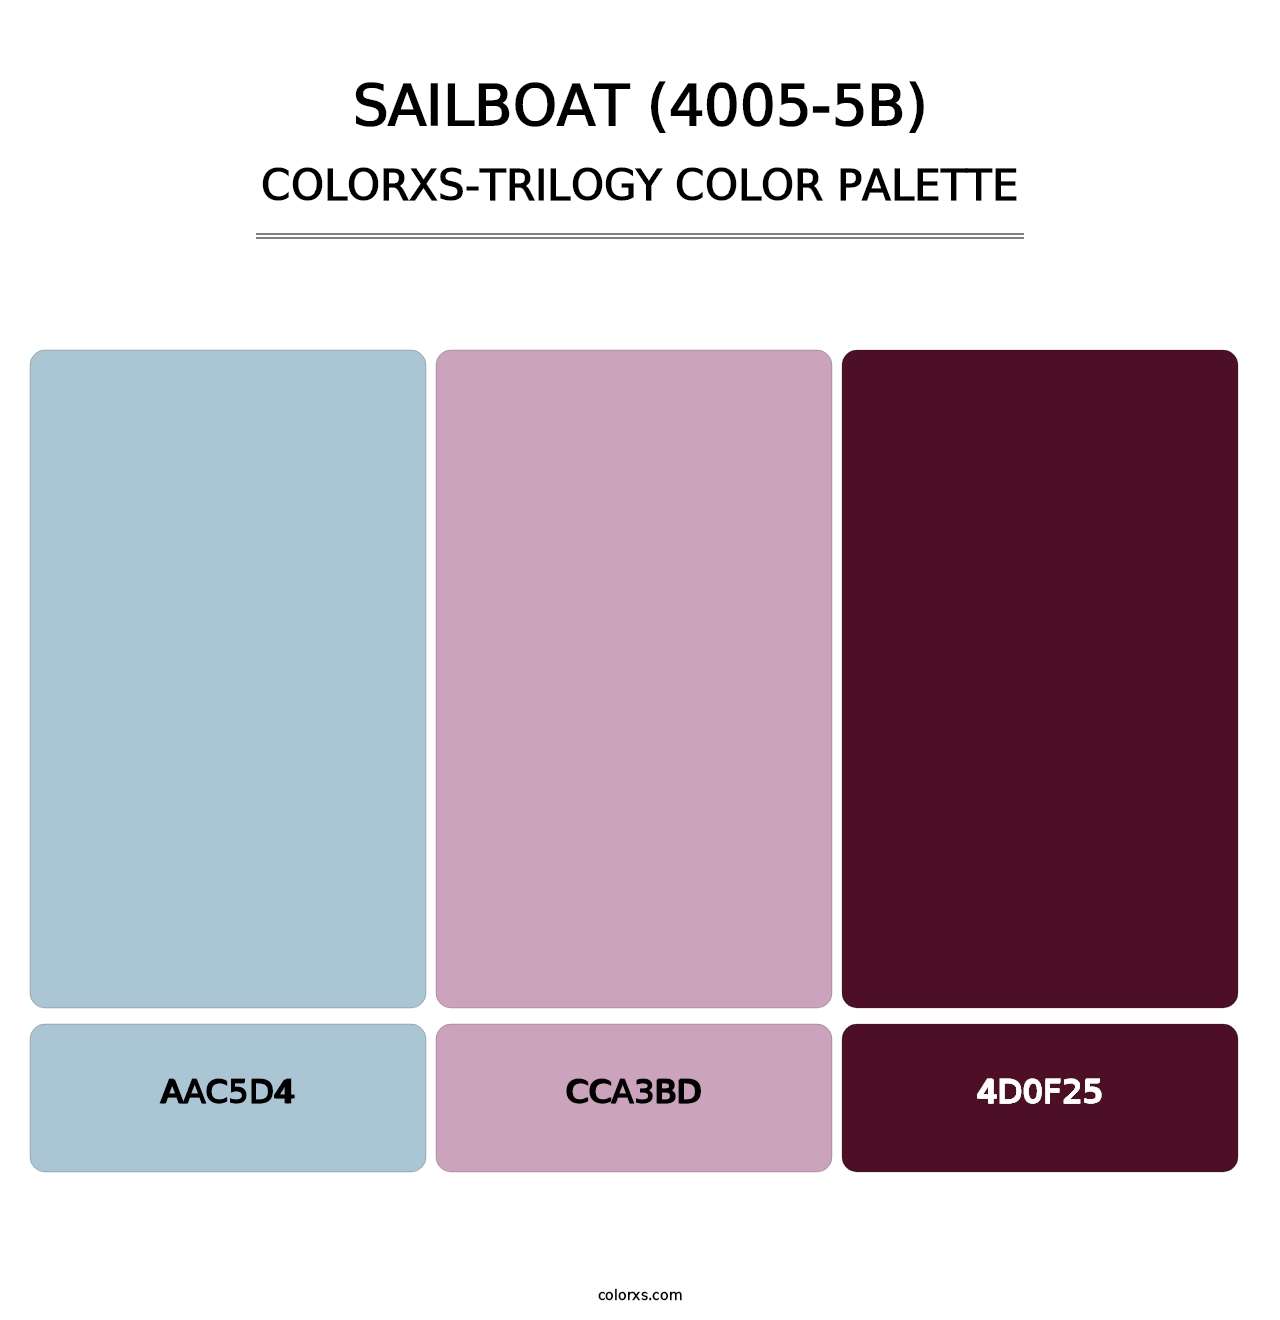 Sailboat (4005-5B) - Colorxs Trilogy Palette